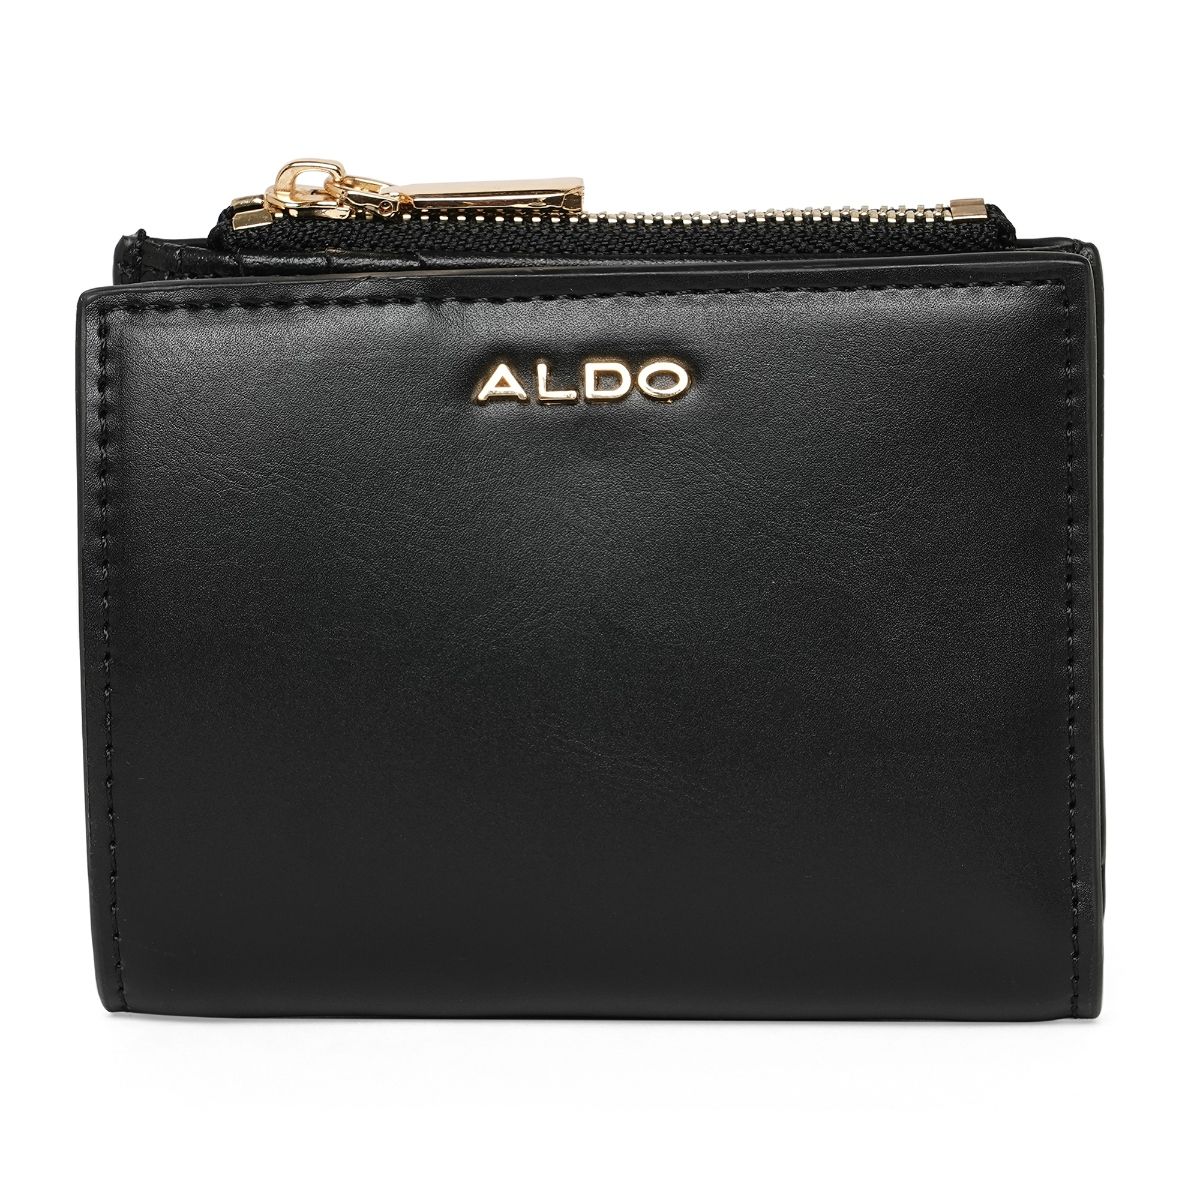 Aldo Black Synthetic Women Wallet: Buy Aldo Black Synthetic Women ...